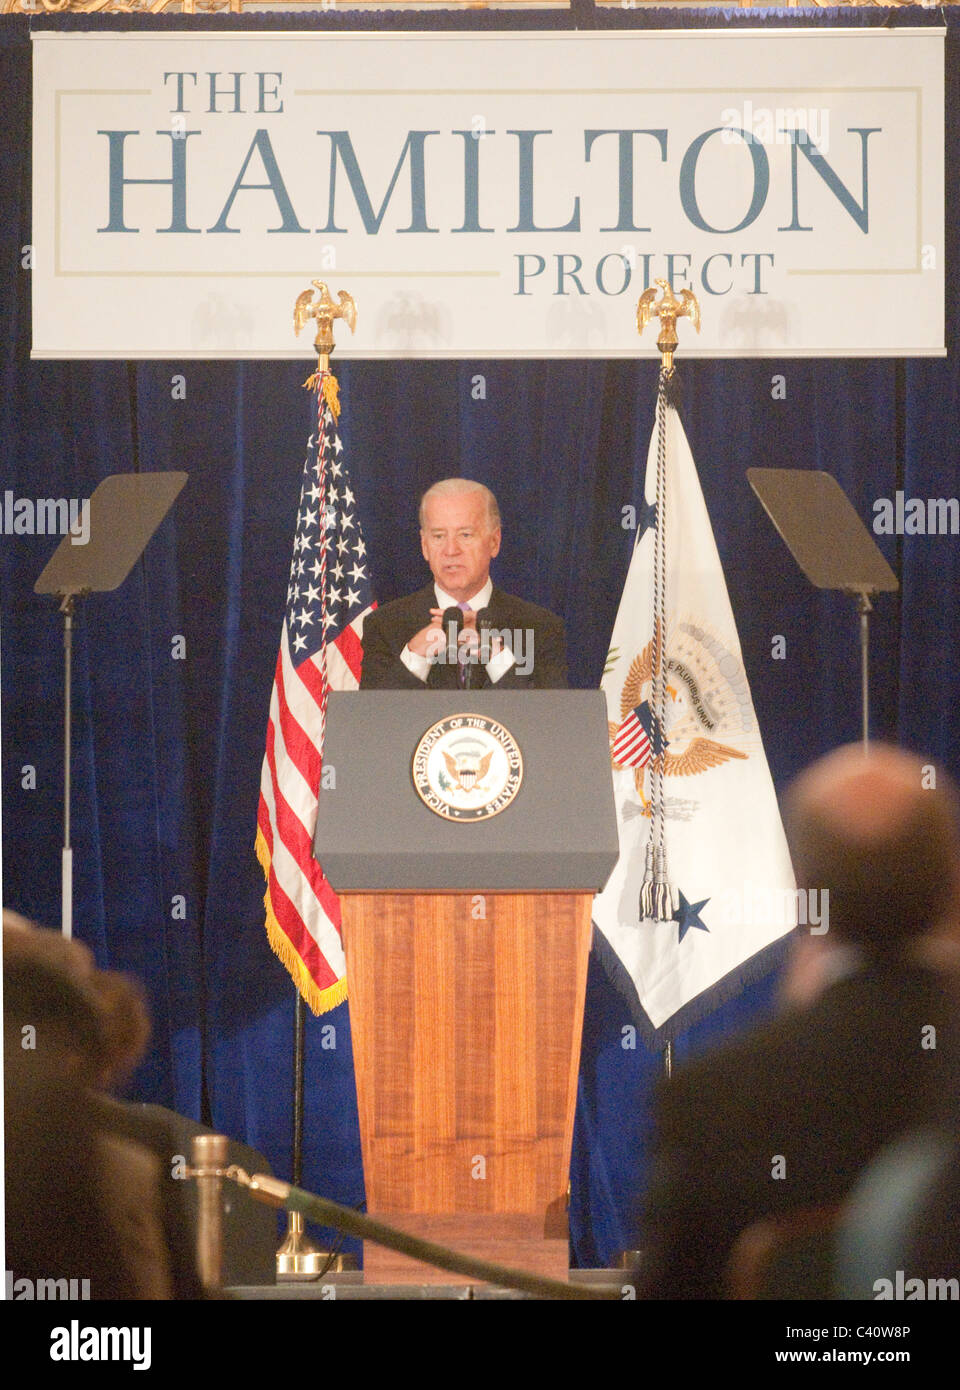 El vicepresidente Joe Biden, habla en la Hamilton project 2010 Evento de puesta en marcha. Foto de stock